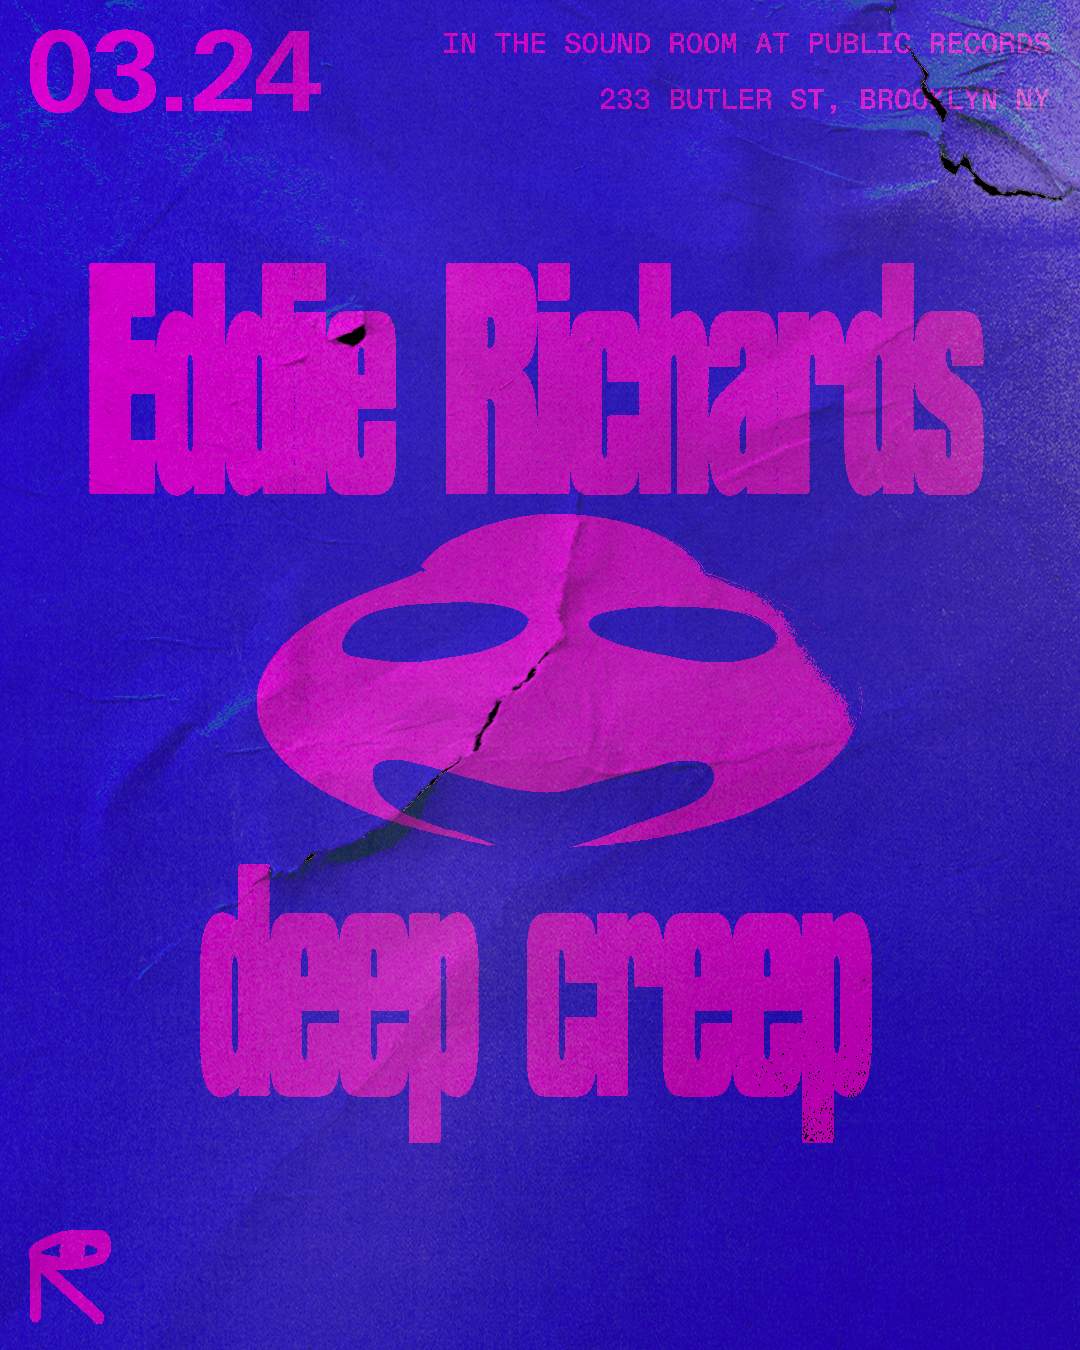 Eddie Richards + deep creep - フライヤー表